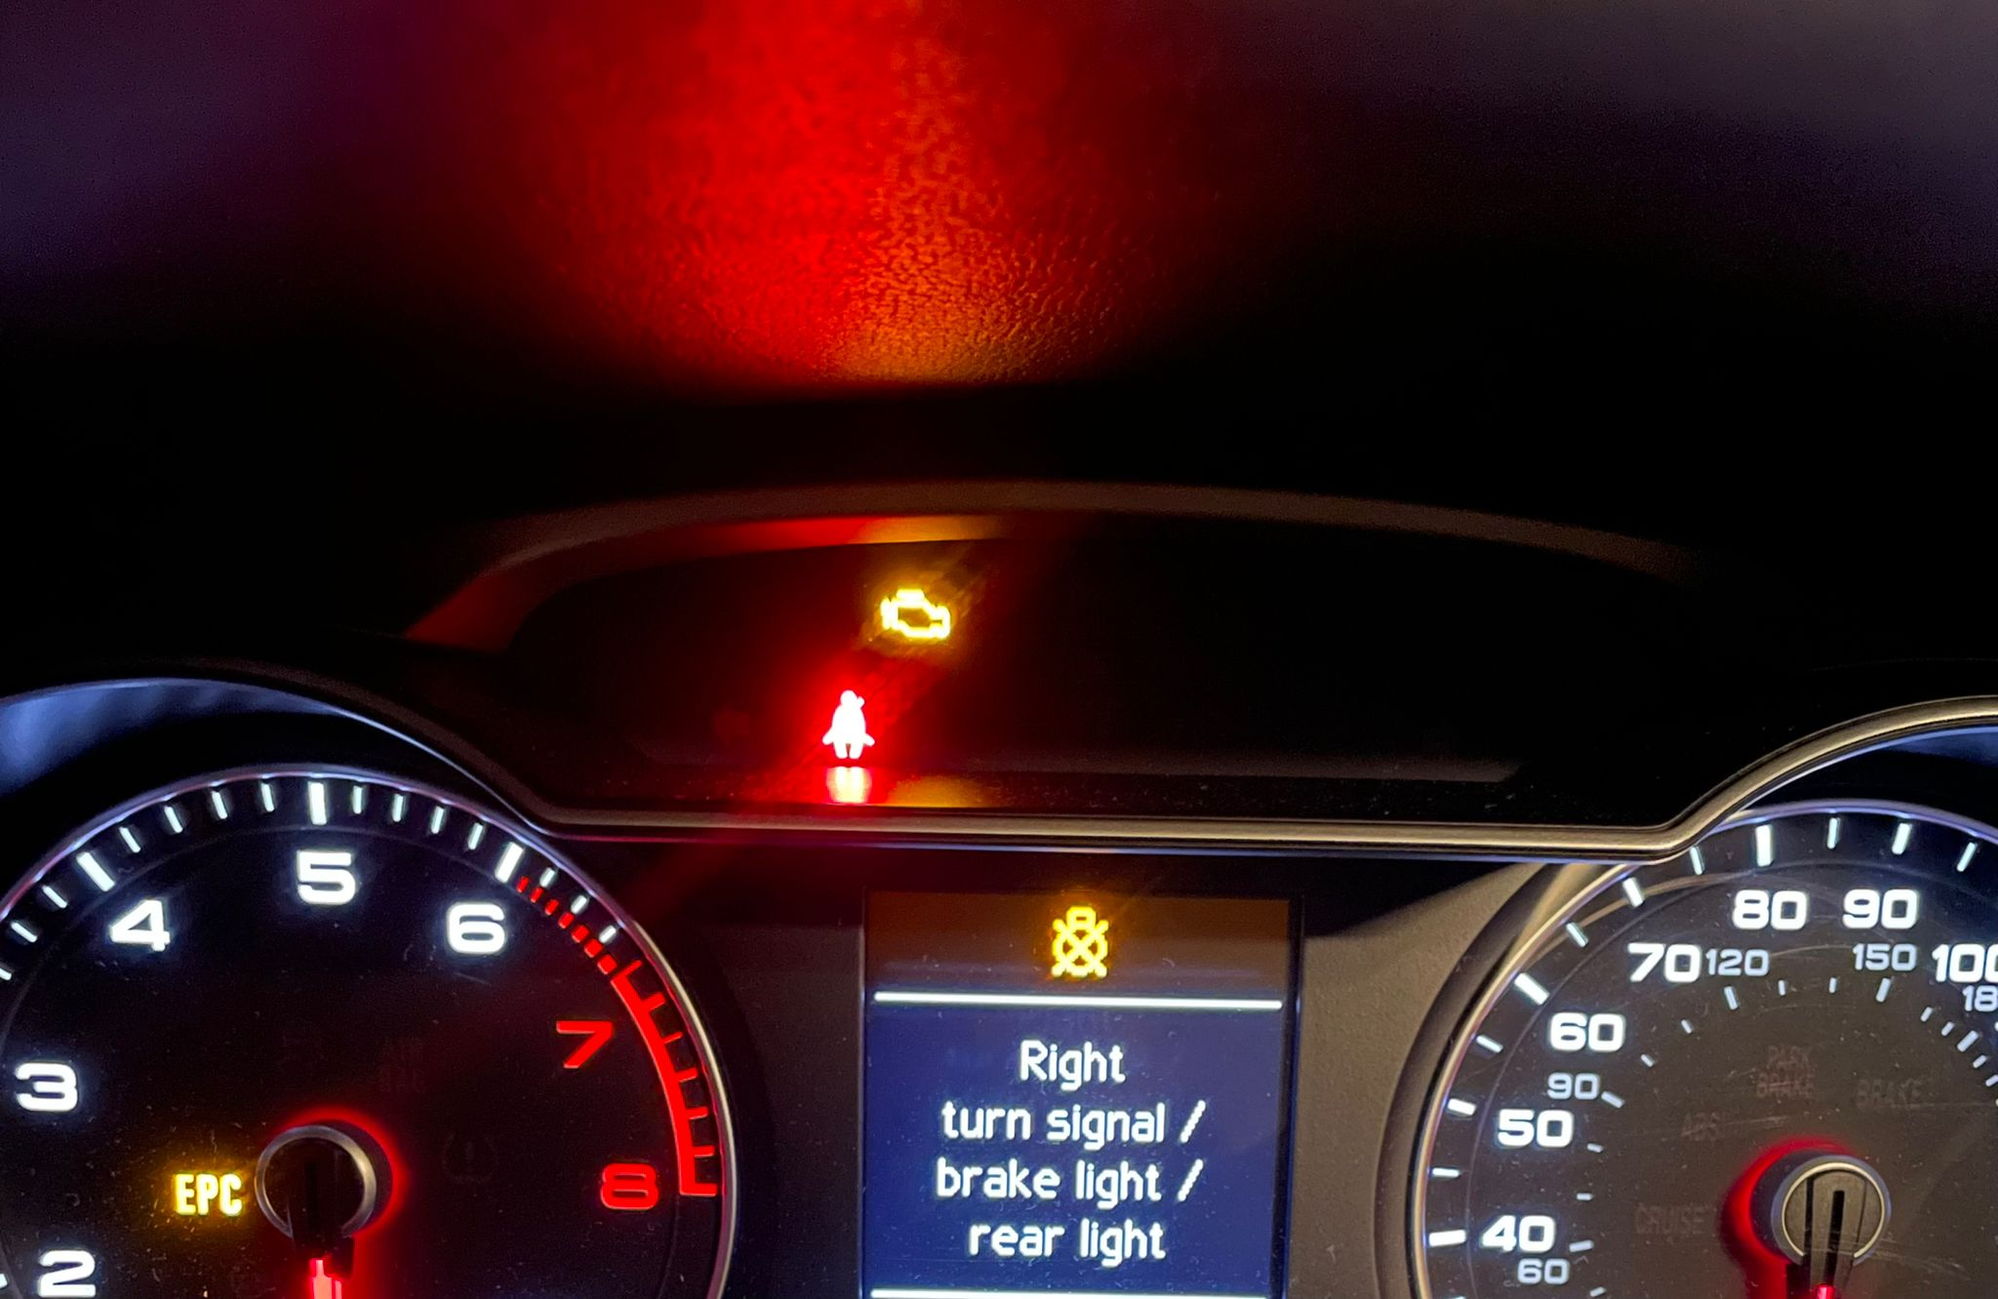 Right turn /brake light /rear light WARNING AudiWorld Forums